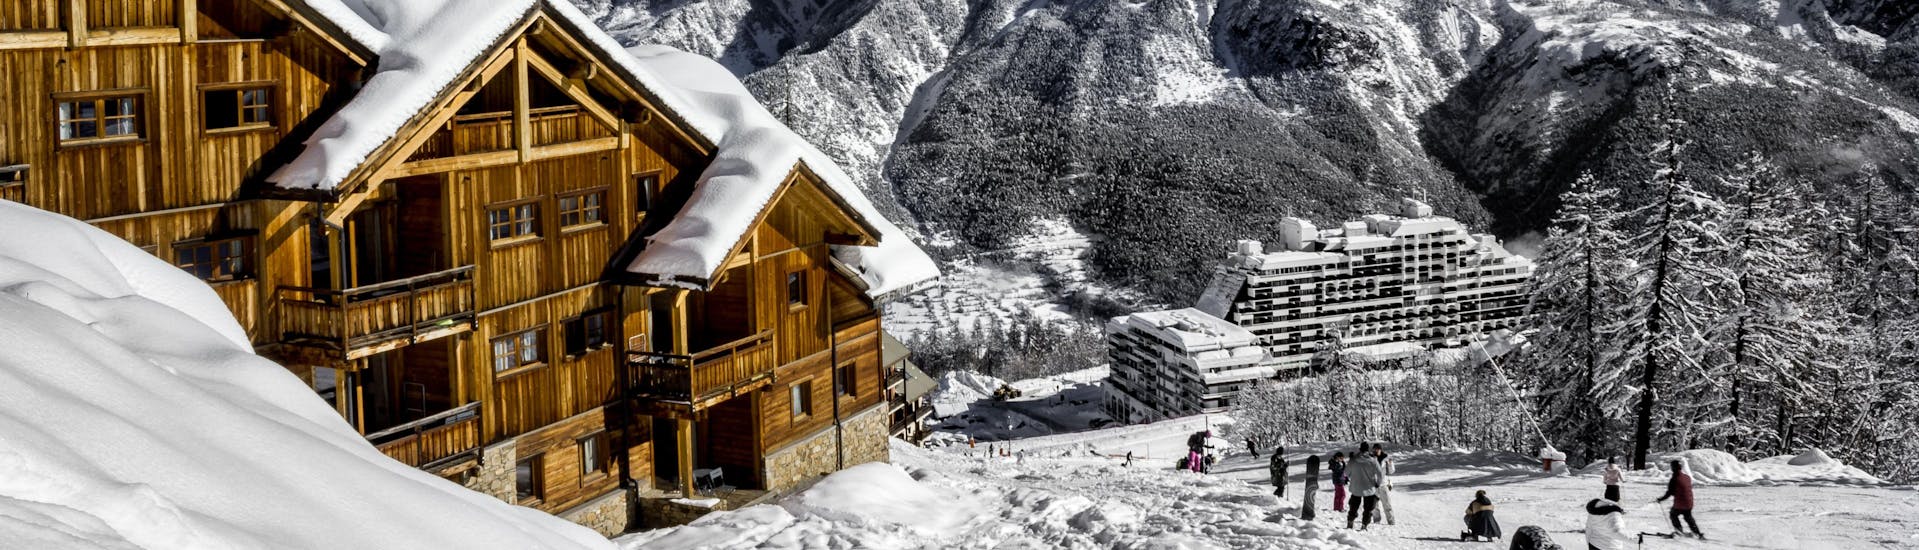 Une vue de la station de ski française de Puy Saint Vincent 1400 avec ses chalets en bois et ses pistes où les écoles de ski locales offrent un large éventail de cours de ski pour ceux qui veulent apprendre à skier.